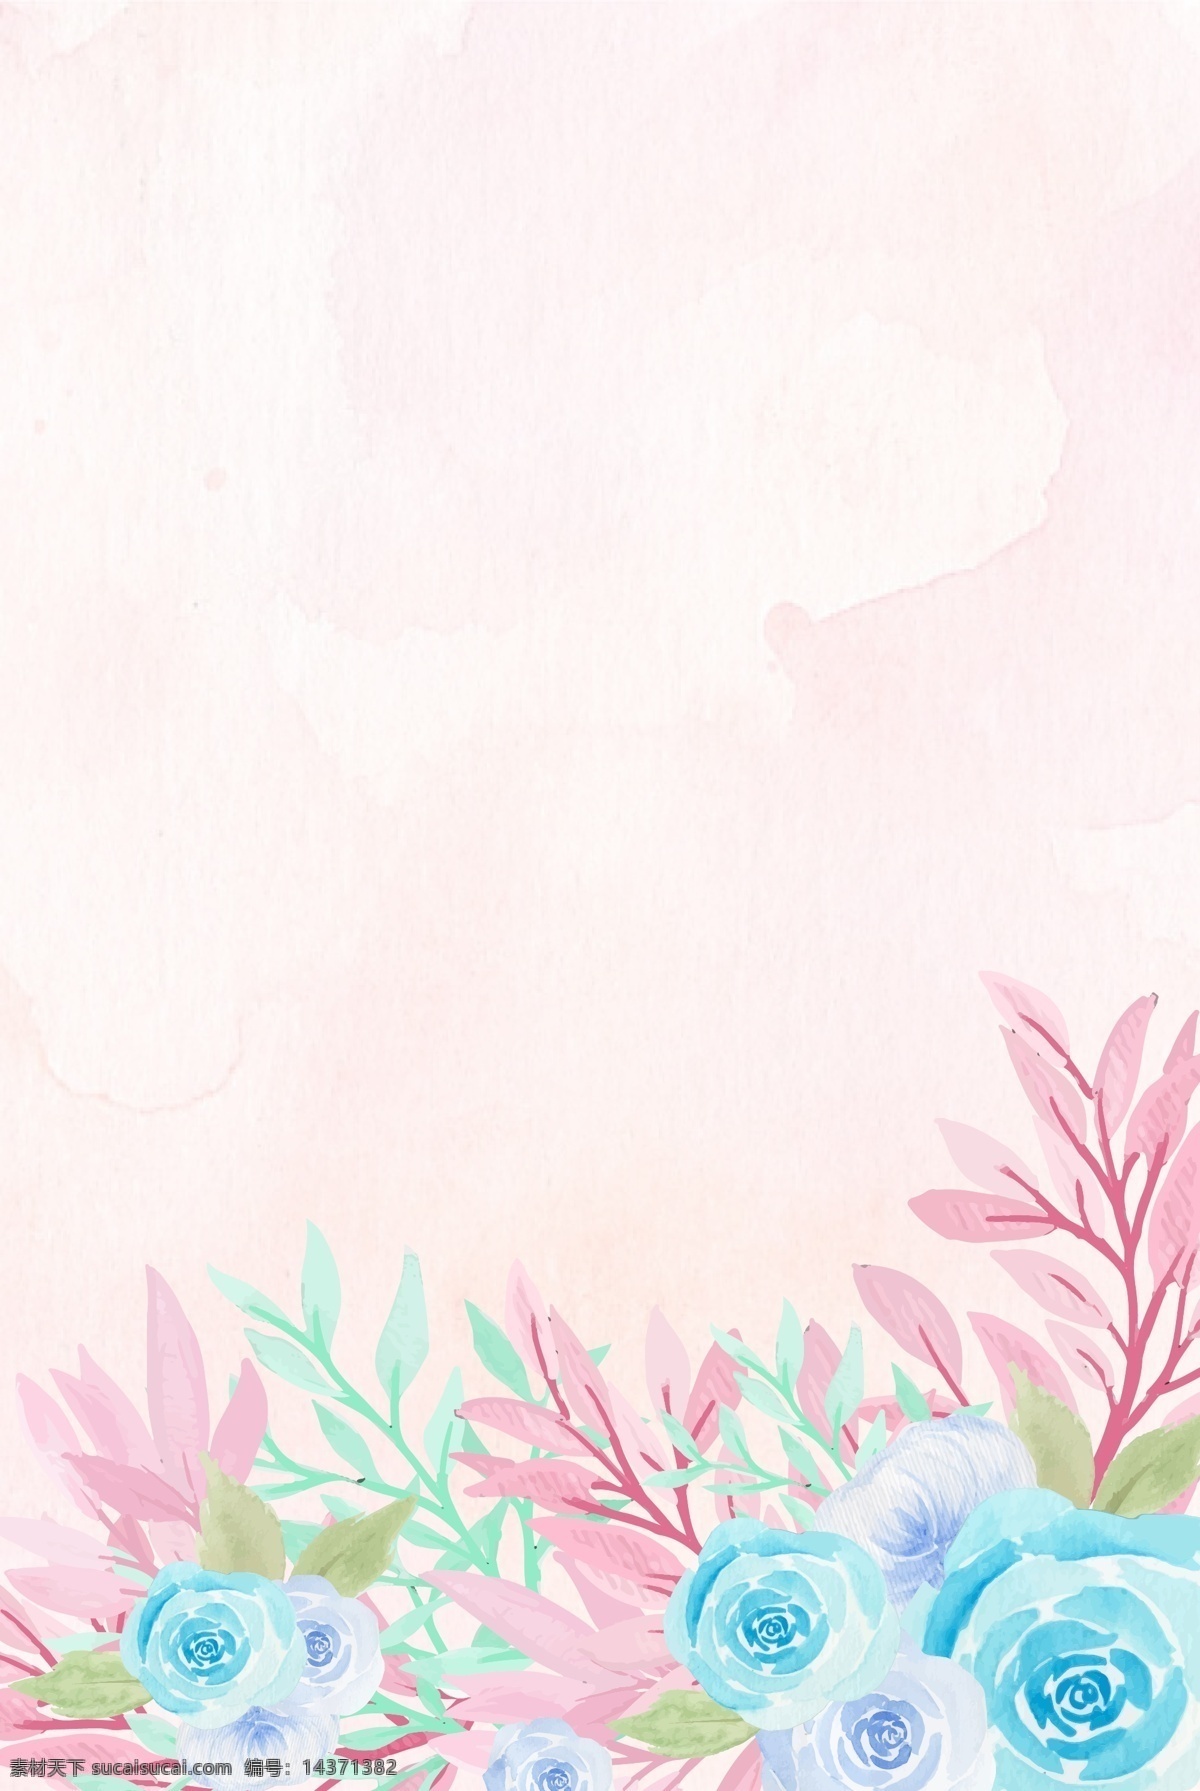 粉色 手绘 花朵 清新 浪漫 边框 背景 素雅 小清新 唯美 花卉 植物 花 海报